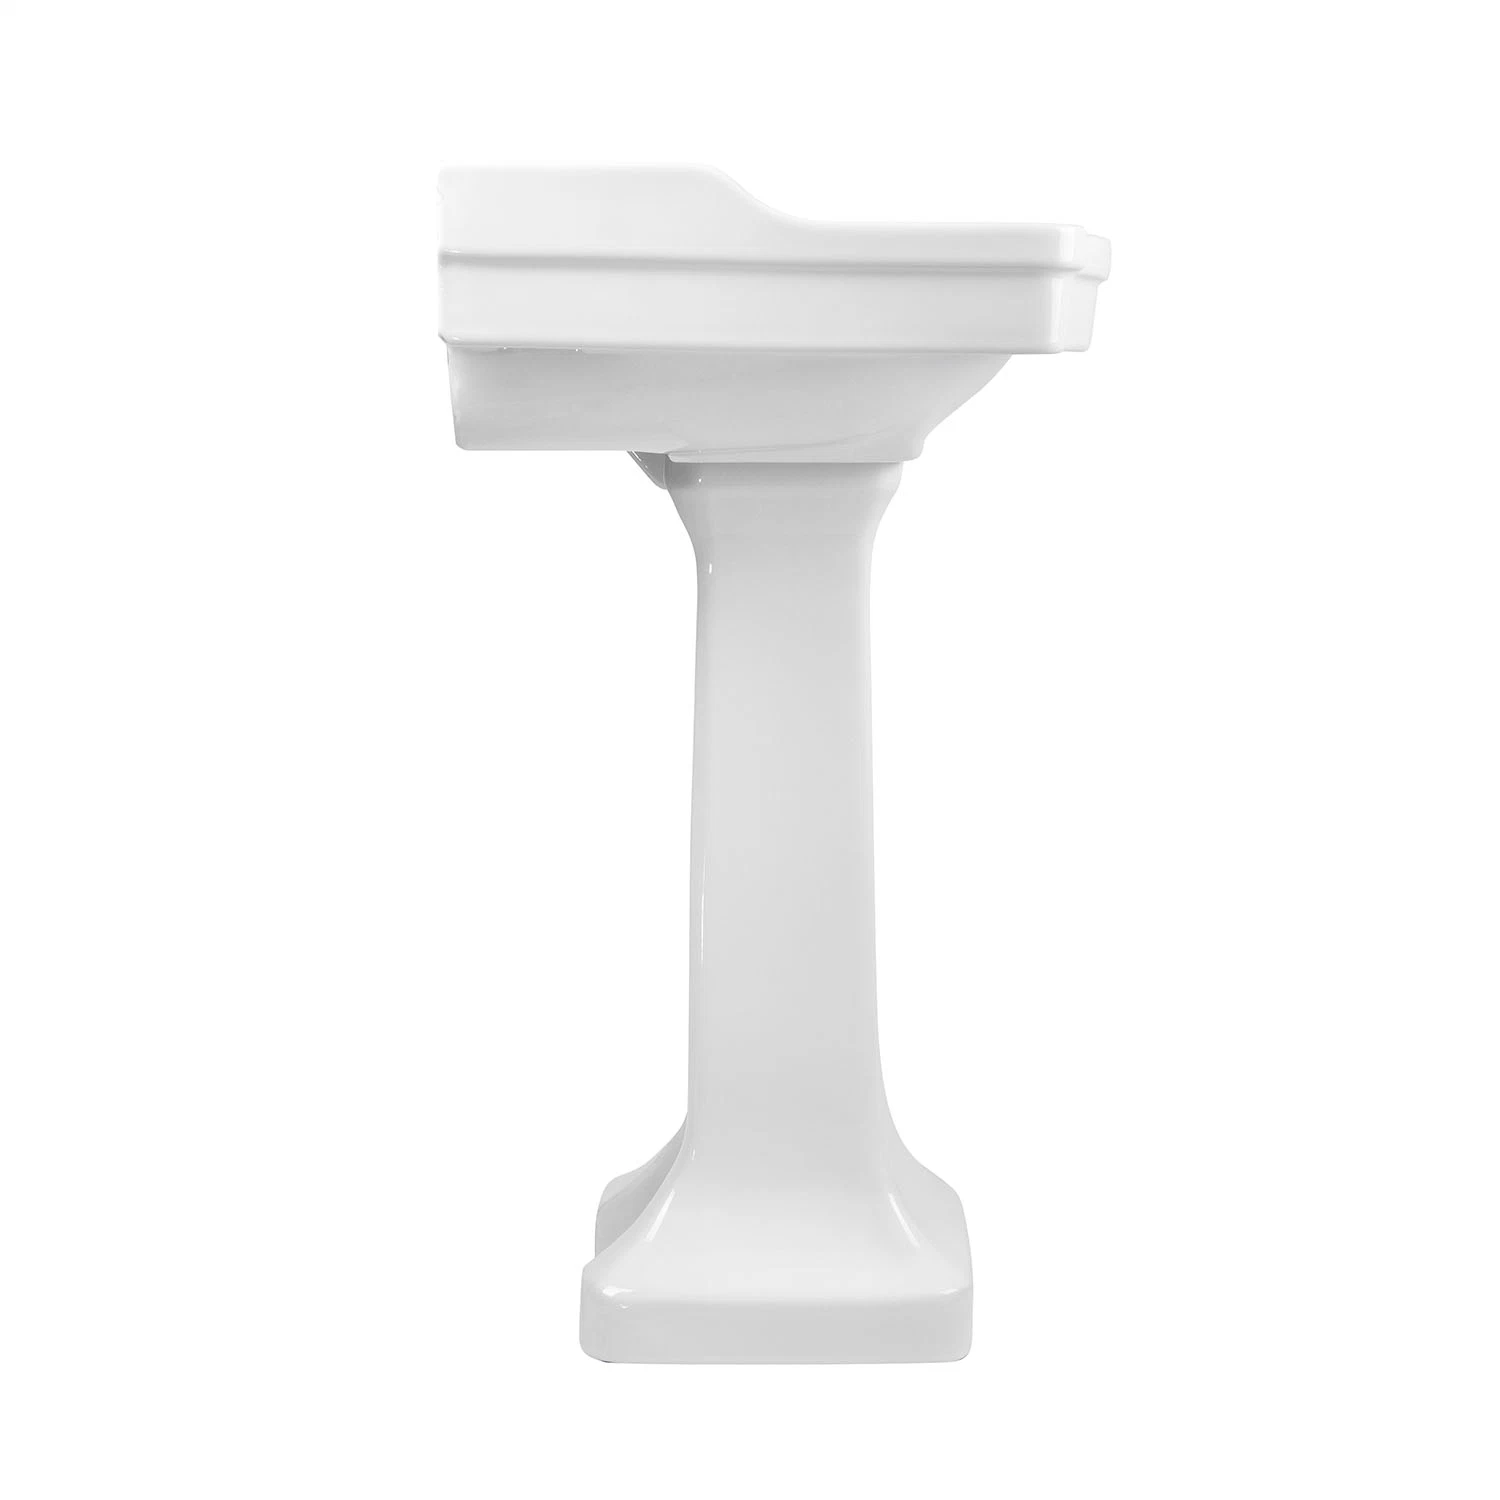 Lavabo de cerámica y lavatorio de pedestal. Lavabo independiente con lavabo de baño Cupc y pedestal.